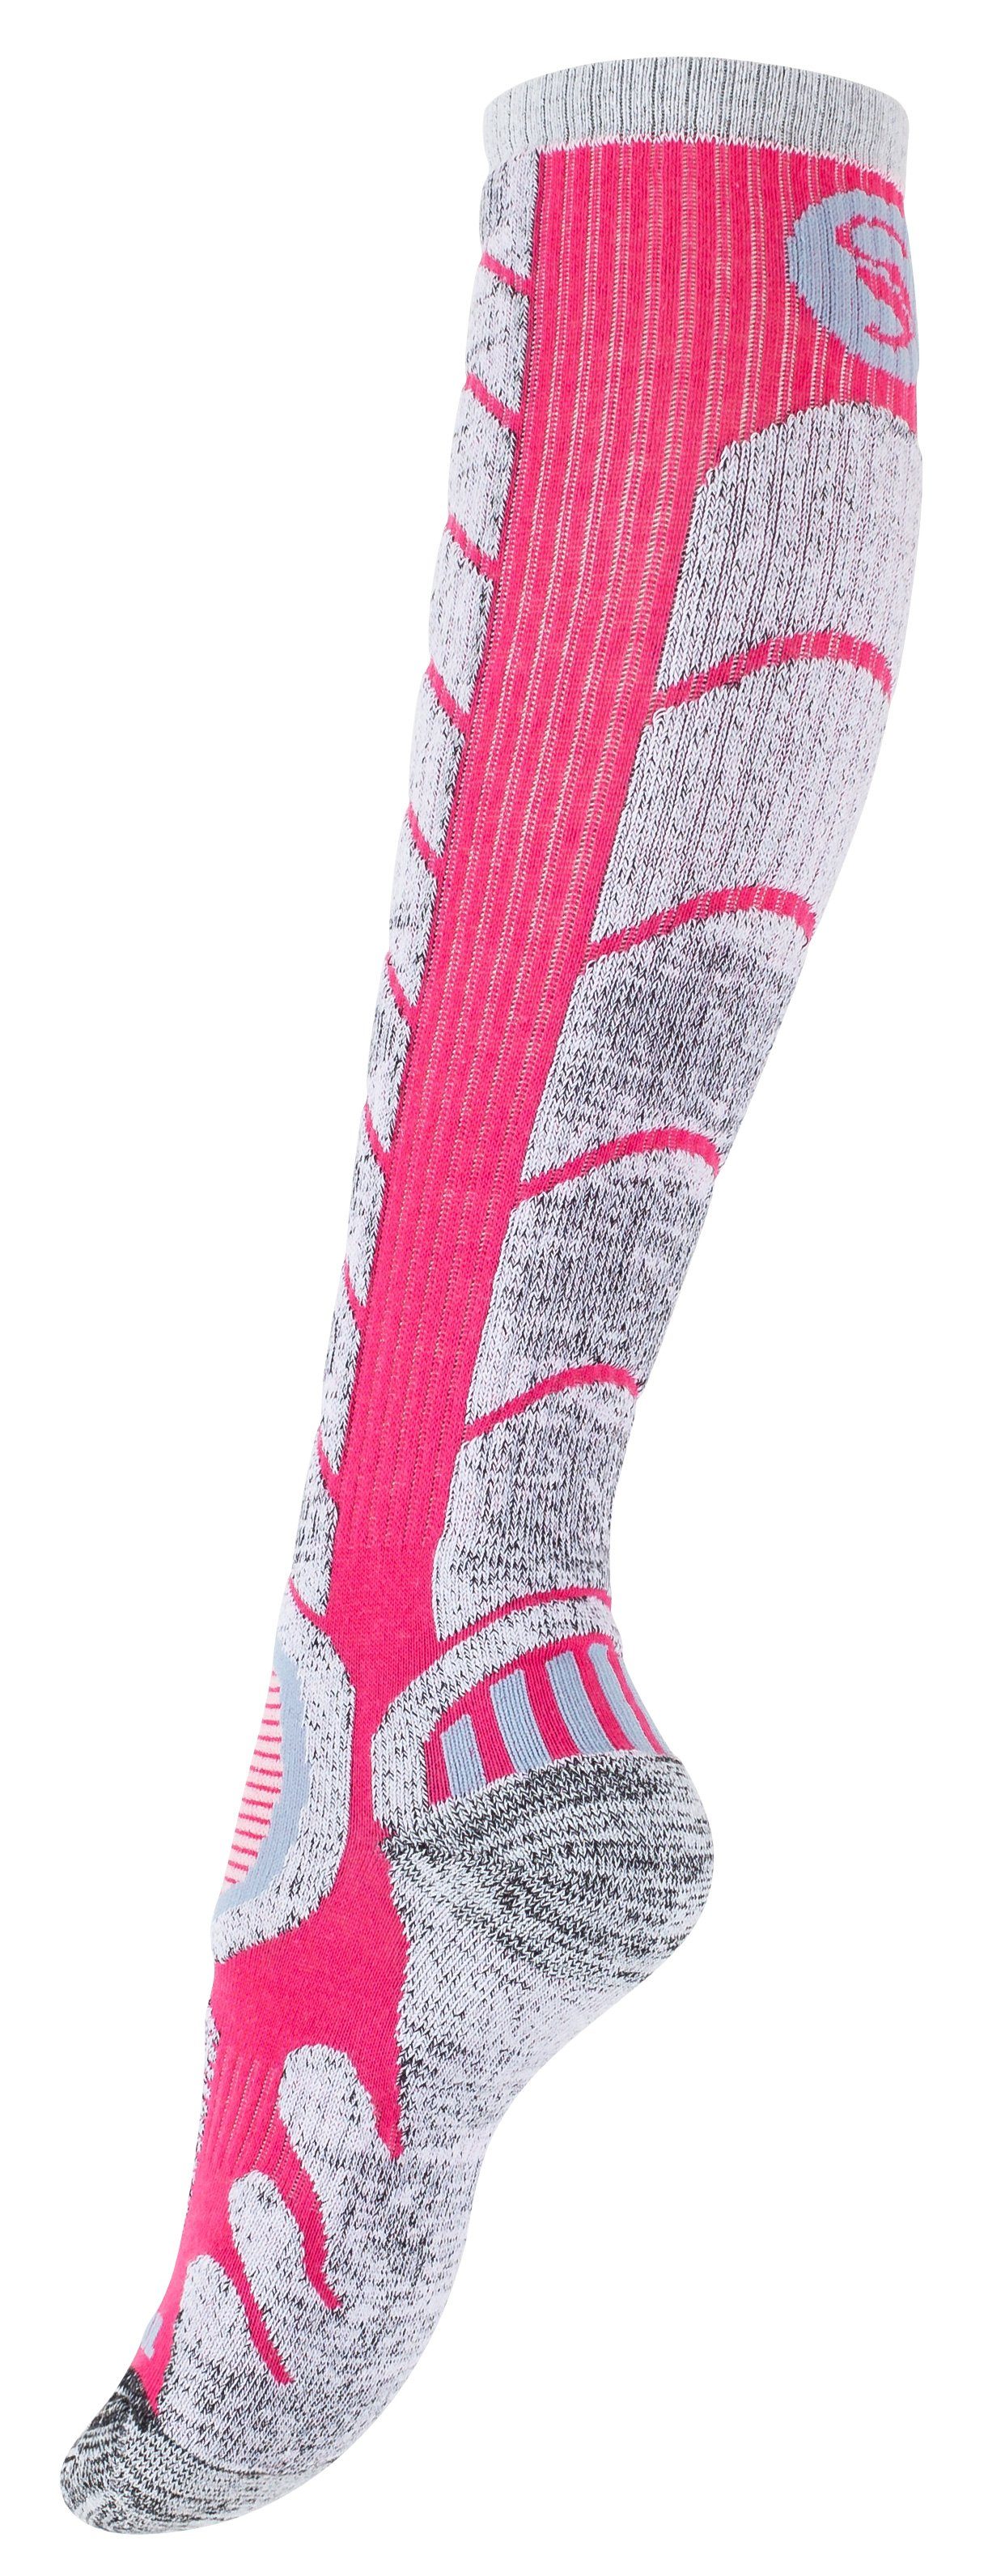 Stark Soul® Skisocken Ski & Socken mit Snowboard Paar Paar 2 Spezialpolsterung, 2 Schwarz/Pink